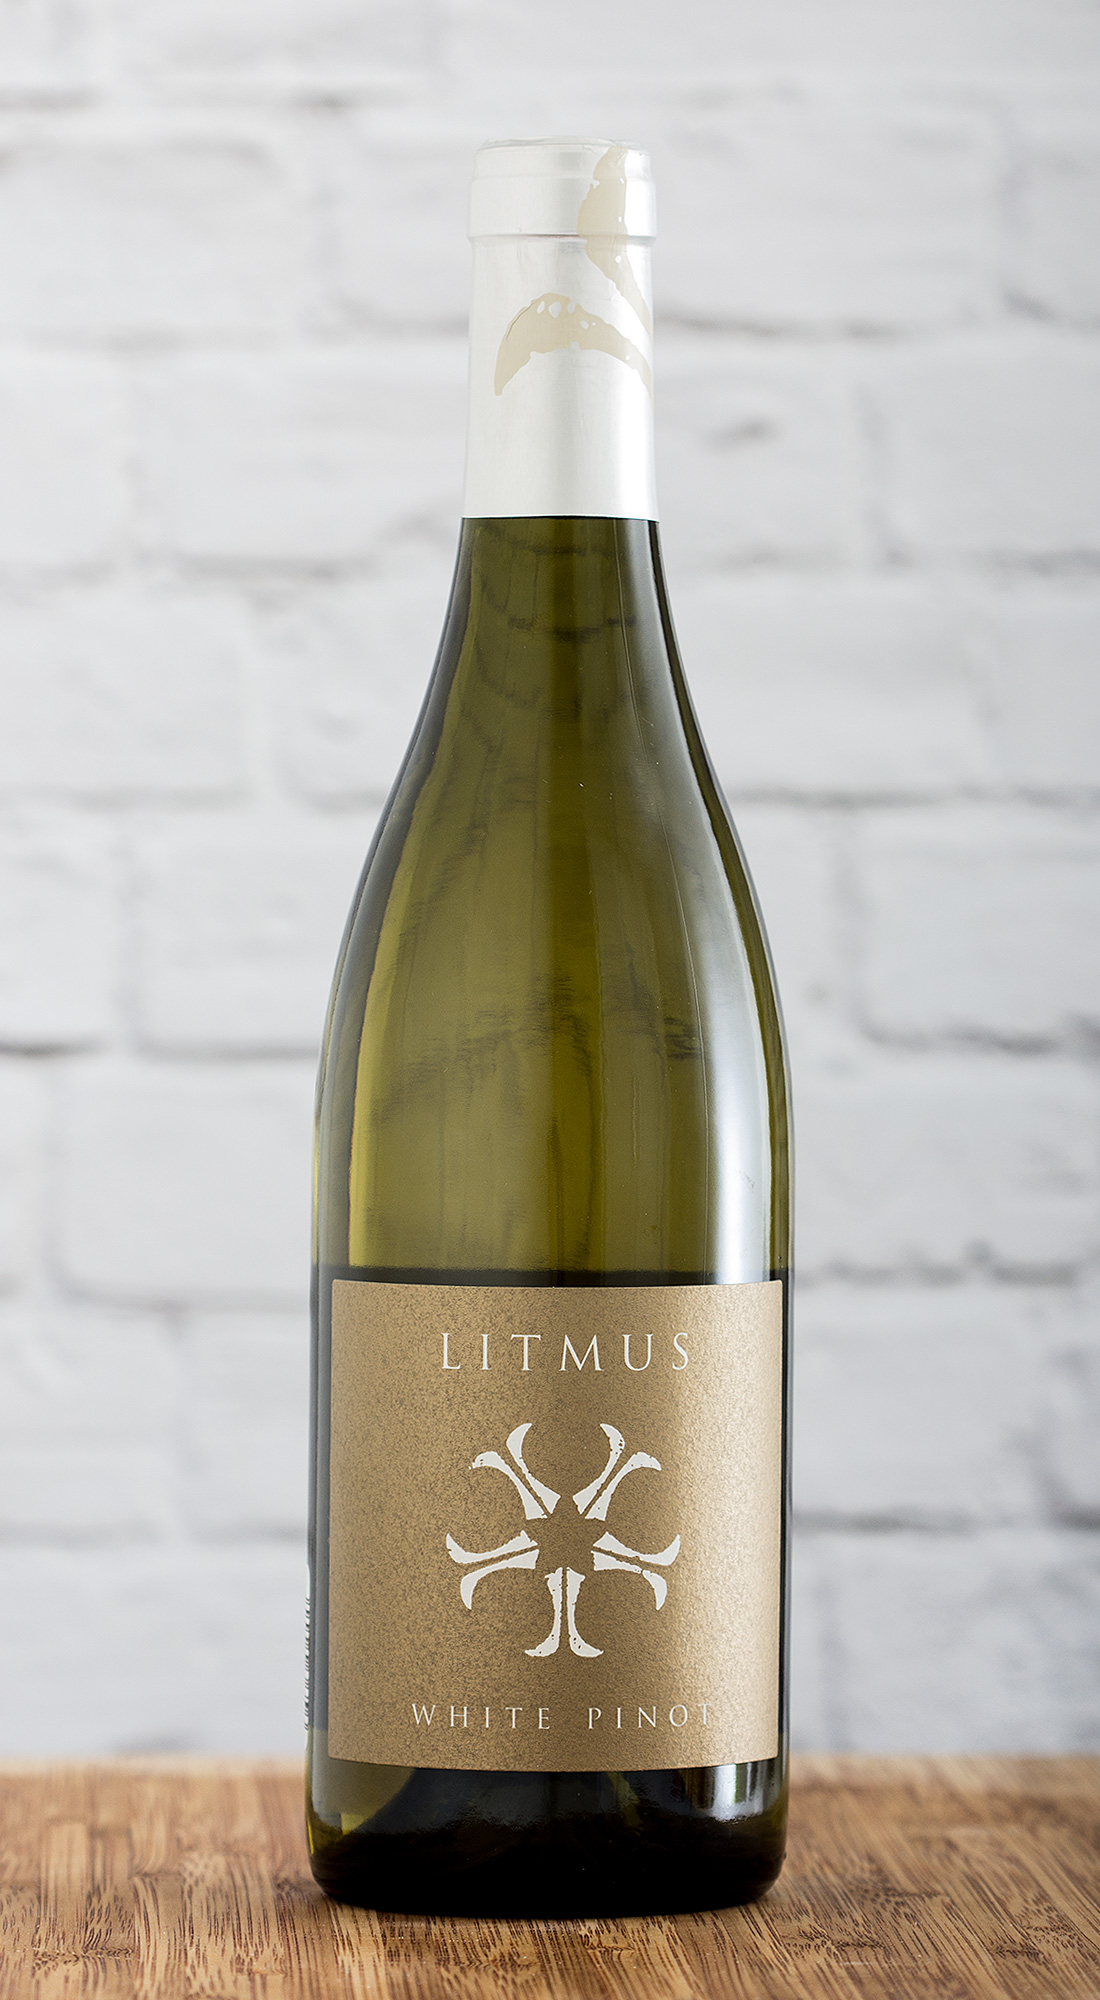 Litmus White Pinot 2011